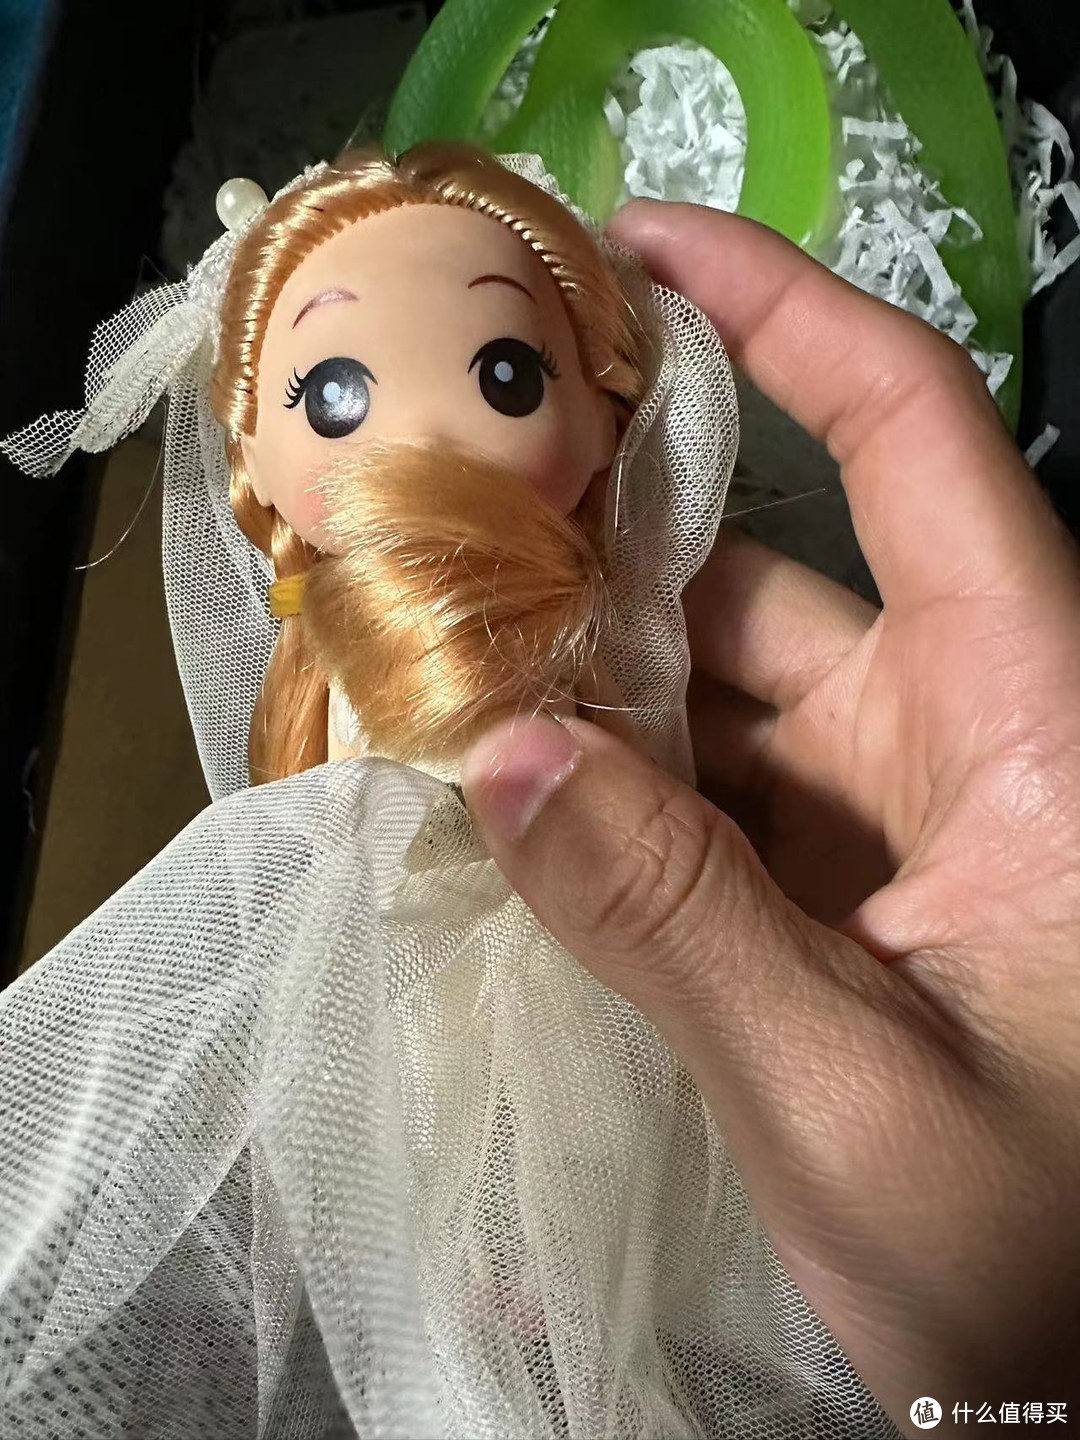 这个芭比娃娃真的当时想象的是自己穿着婚纱是这样子